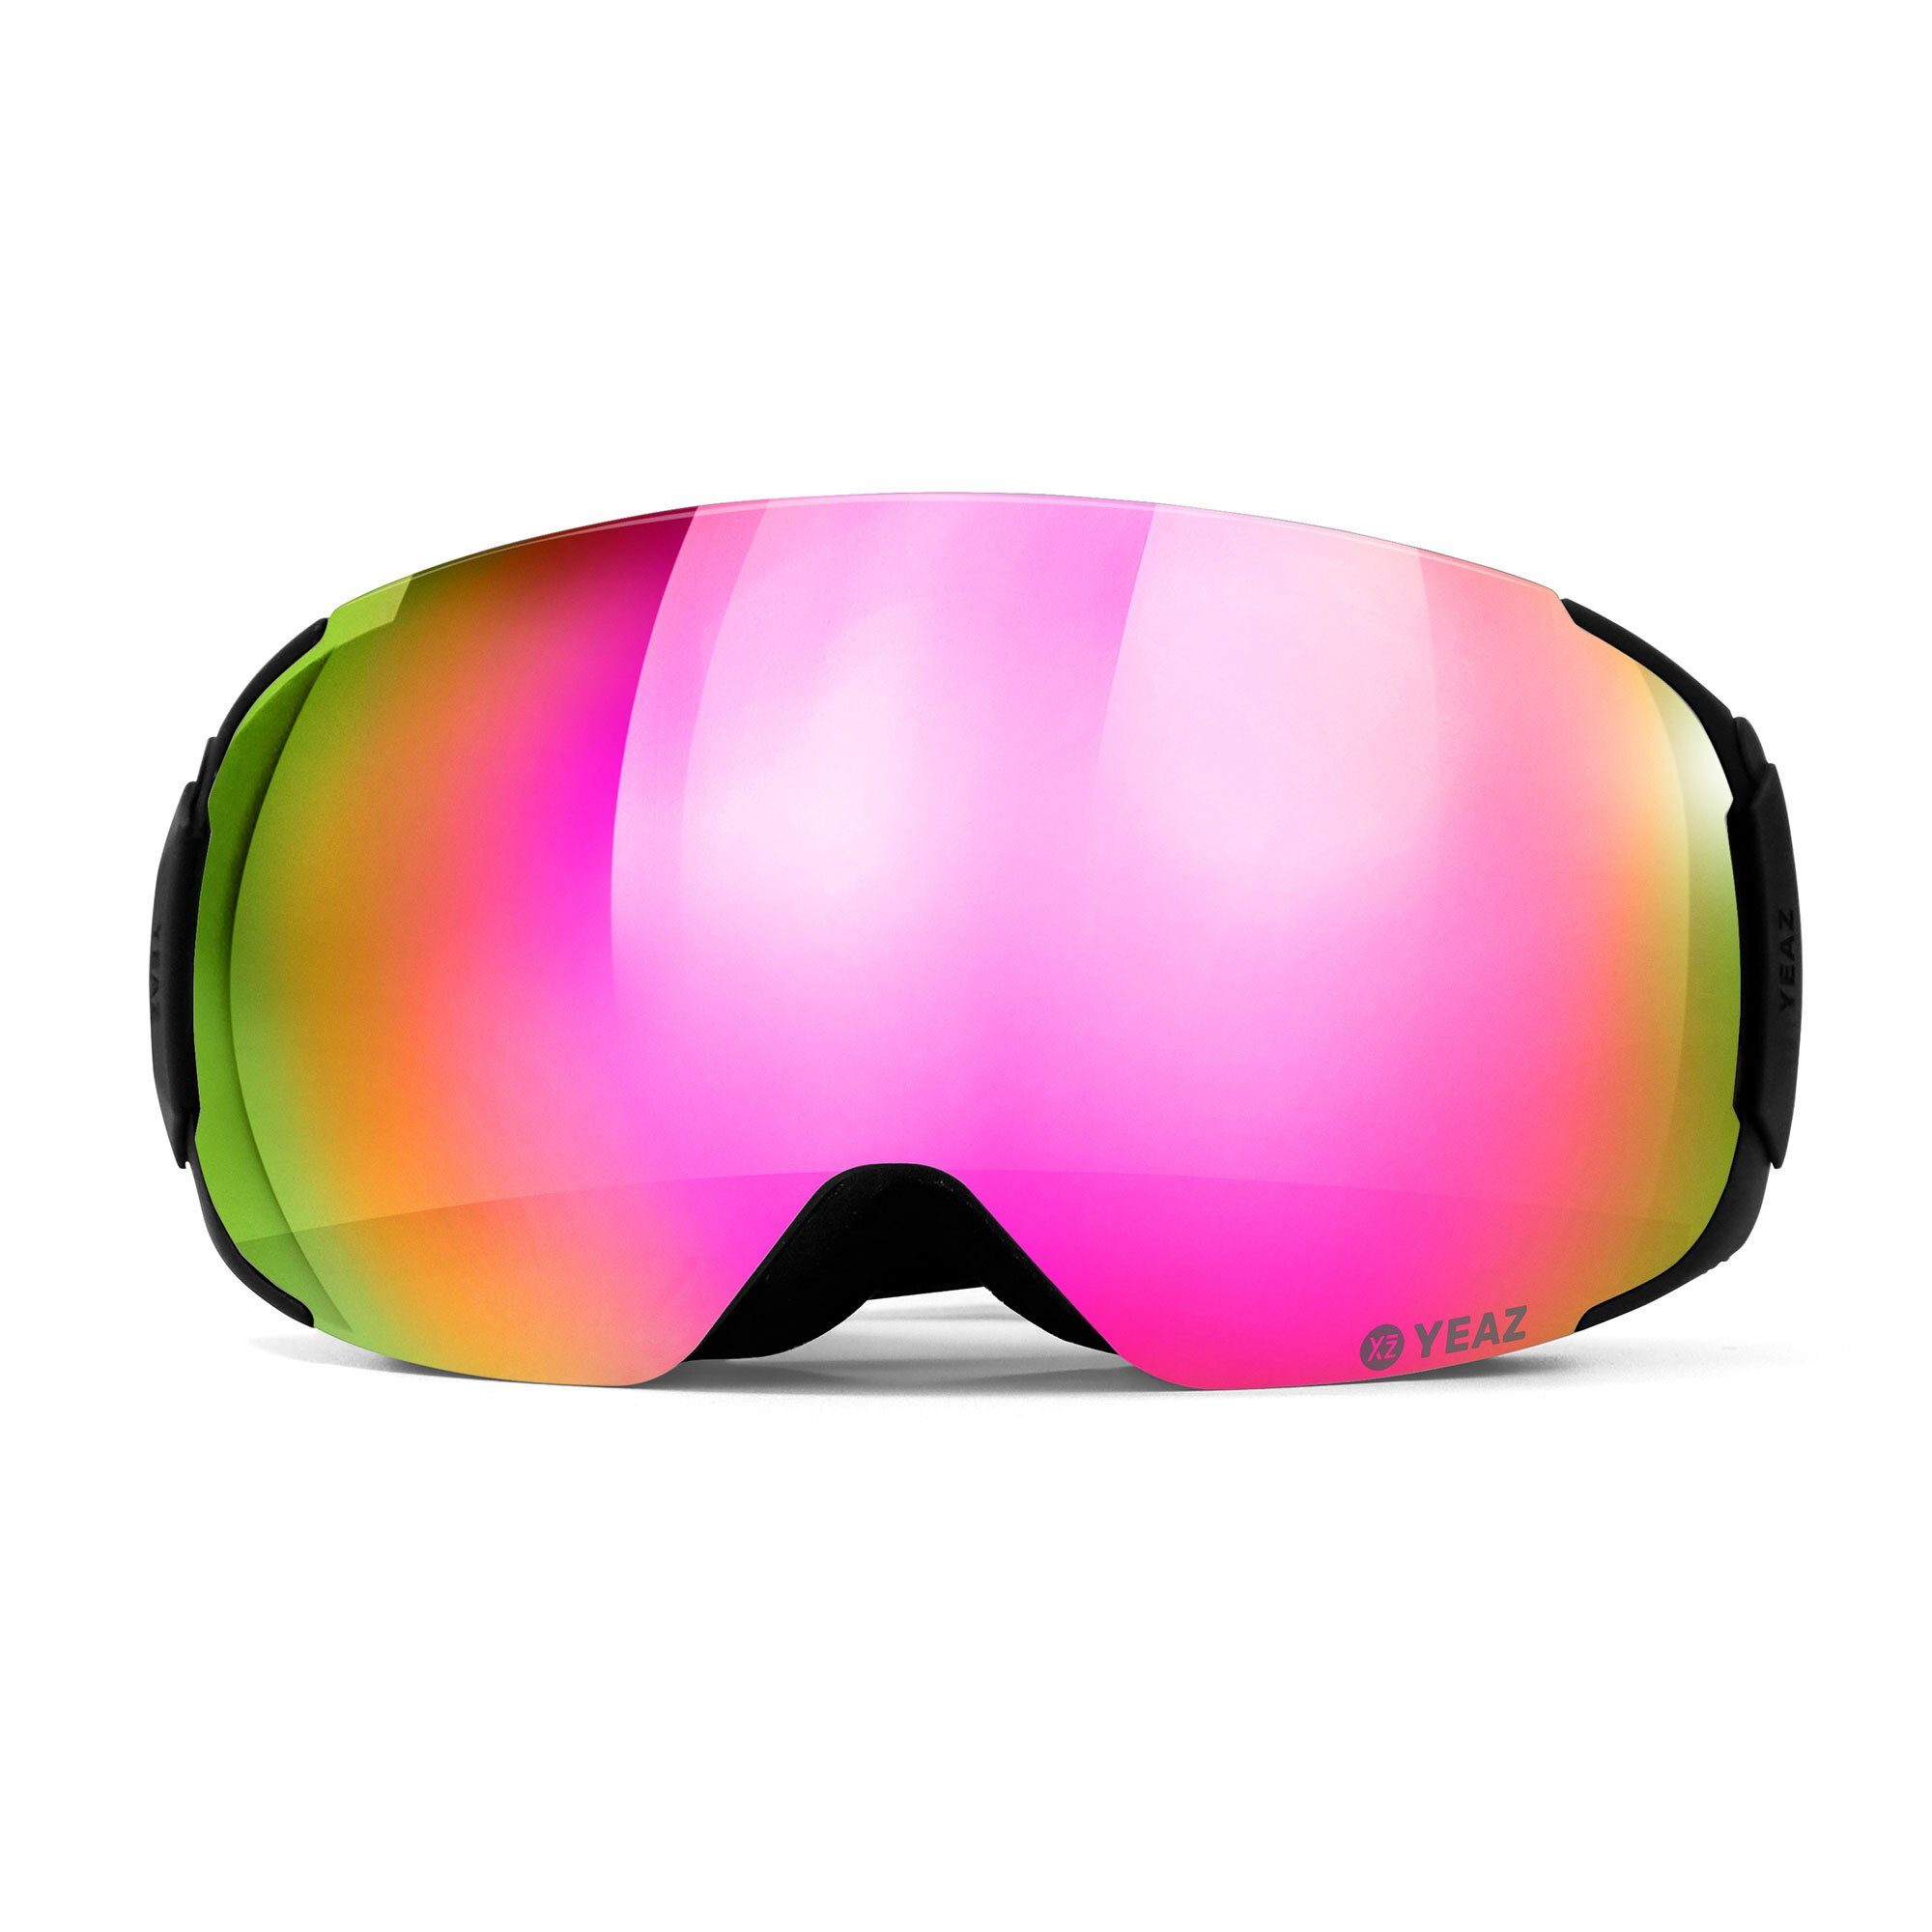 Skibrille und snowboard-brille, Erwachsene TWEAK-X und und ski- Premium-Ski- für Jugendliche YEAZ Snowboardbrille